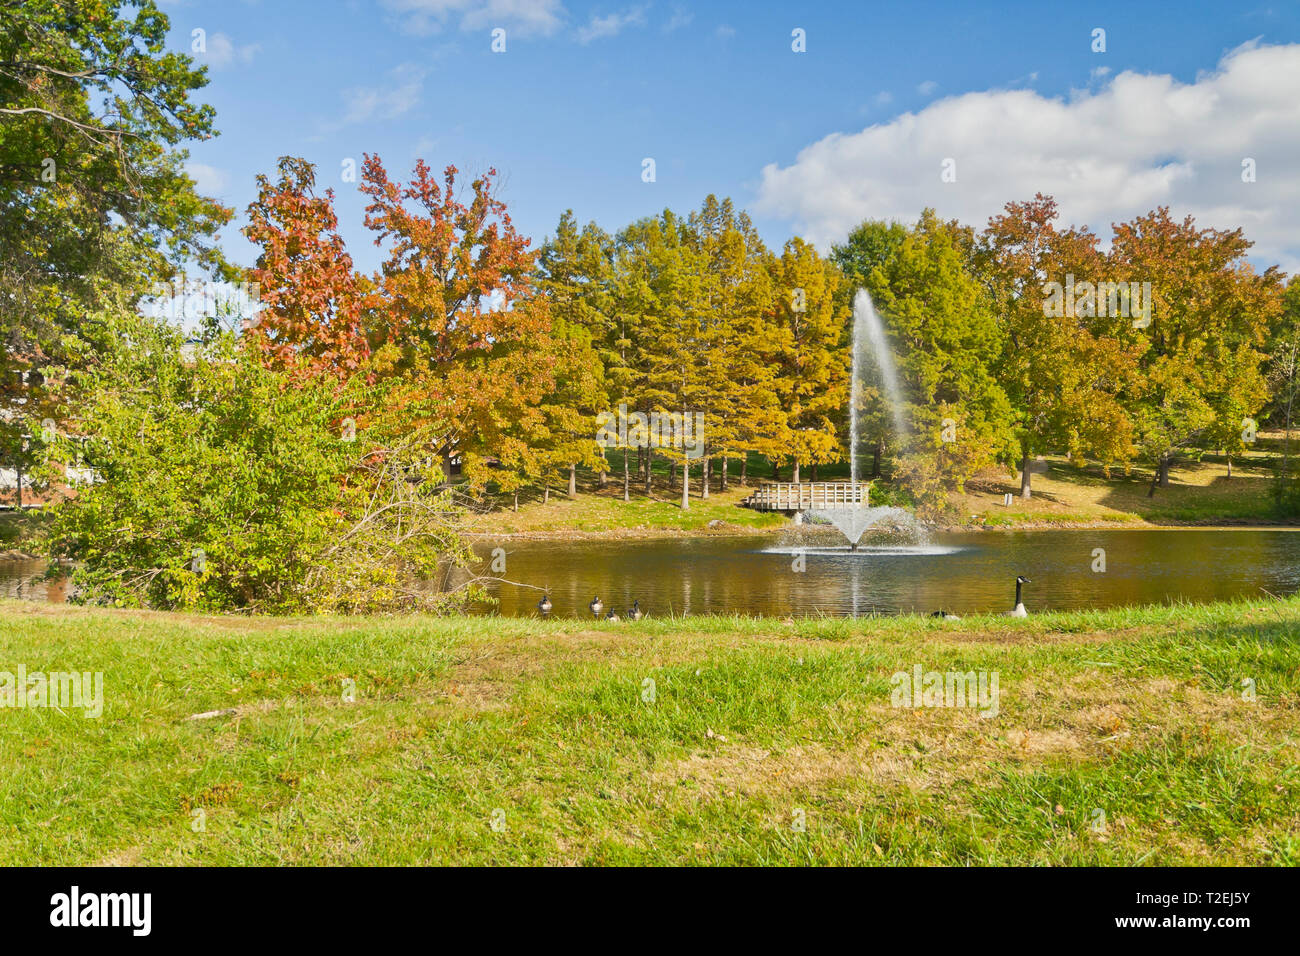 Blu cielo con poche nuvole, caduta di colori tra il verde delle foglie, una fontana, e oche in un pomeriggio autunnale dal lago Bugg sul campus UMSL. Foto Stock